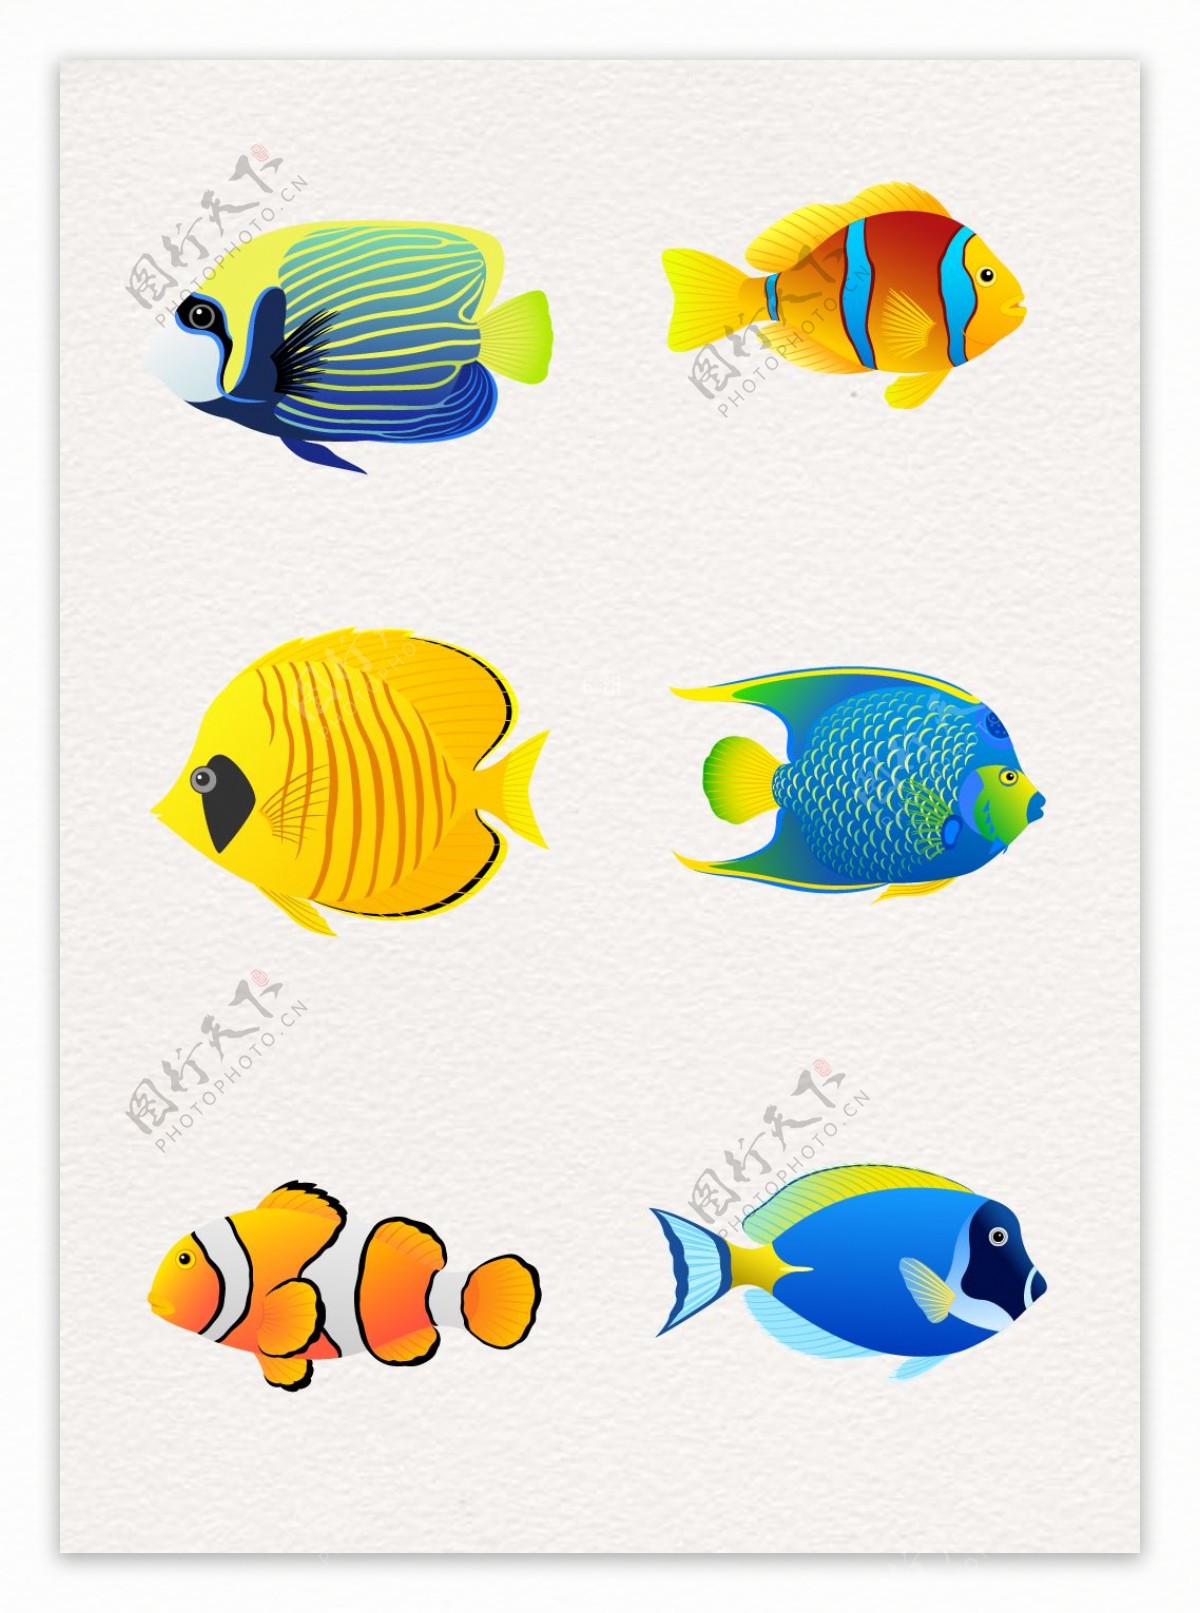 卡通鱼类装饰图案